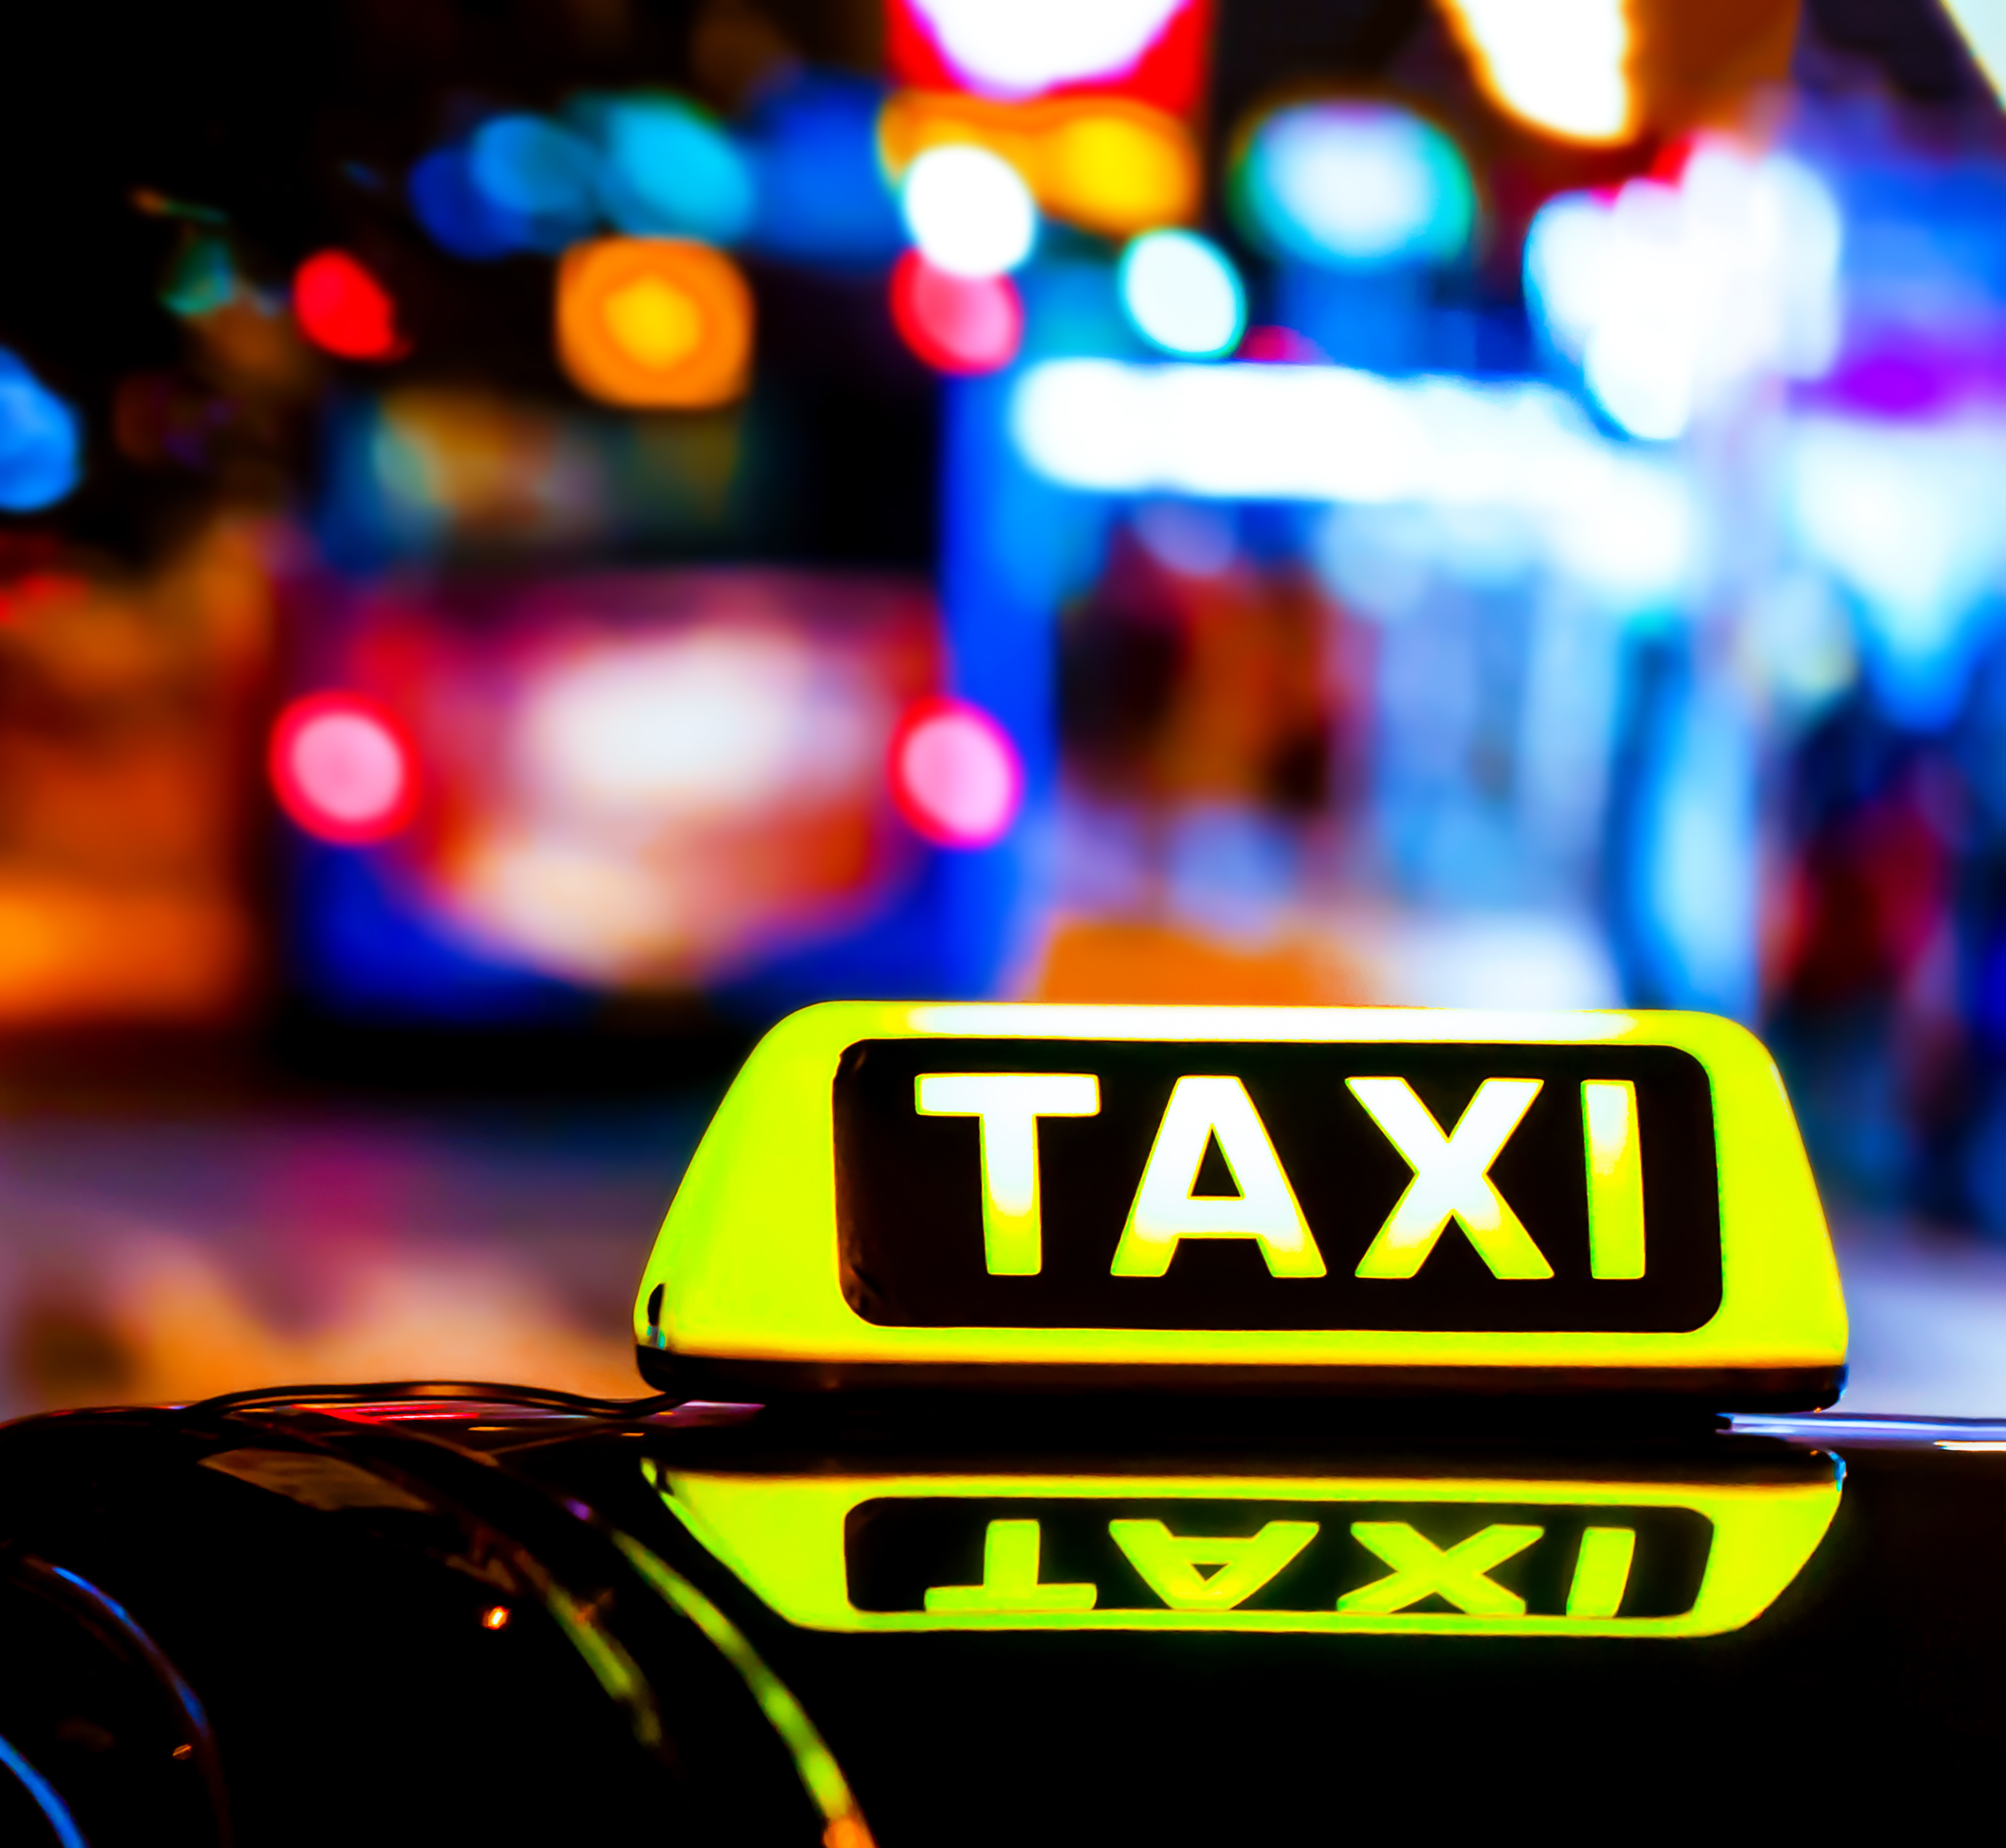 Beleuchtetes Taxi-Schild spiegelt sich auf Fahrzeugdach, nächtliche Straßenszene mit bunten Lichtern unscharf im HIntergrund